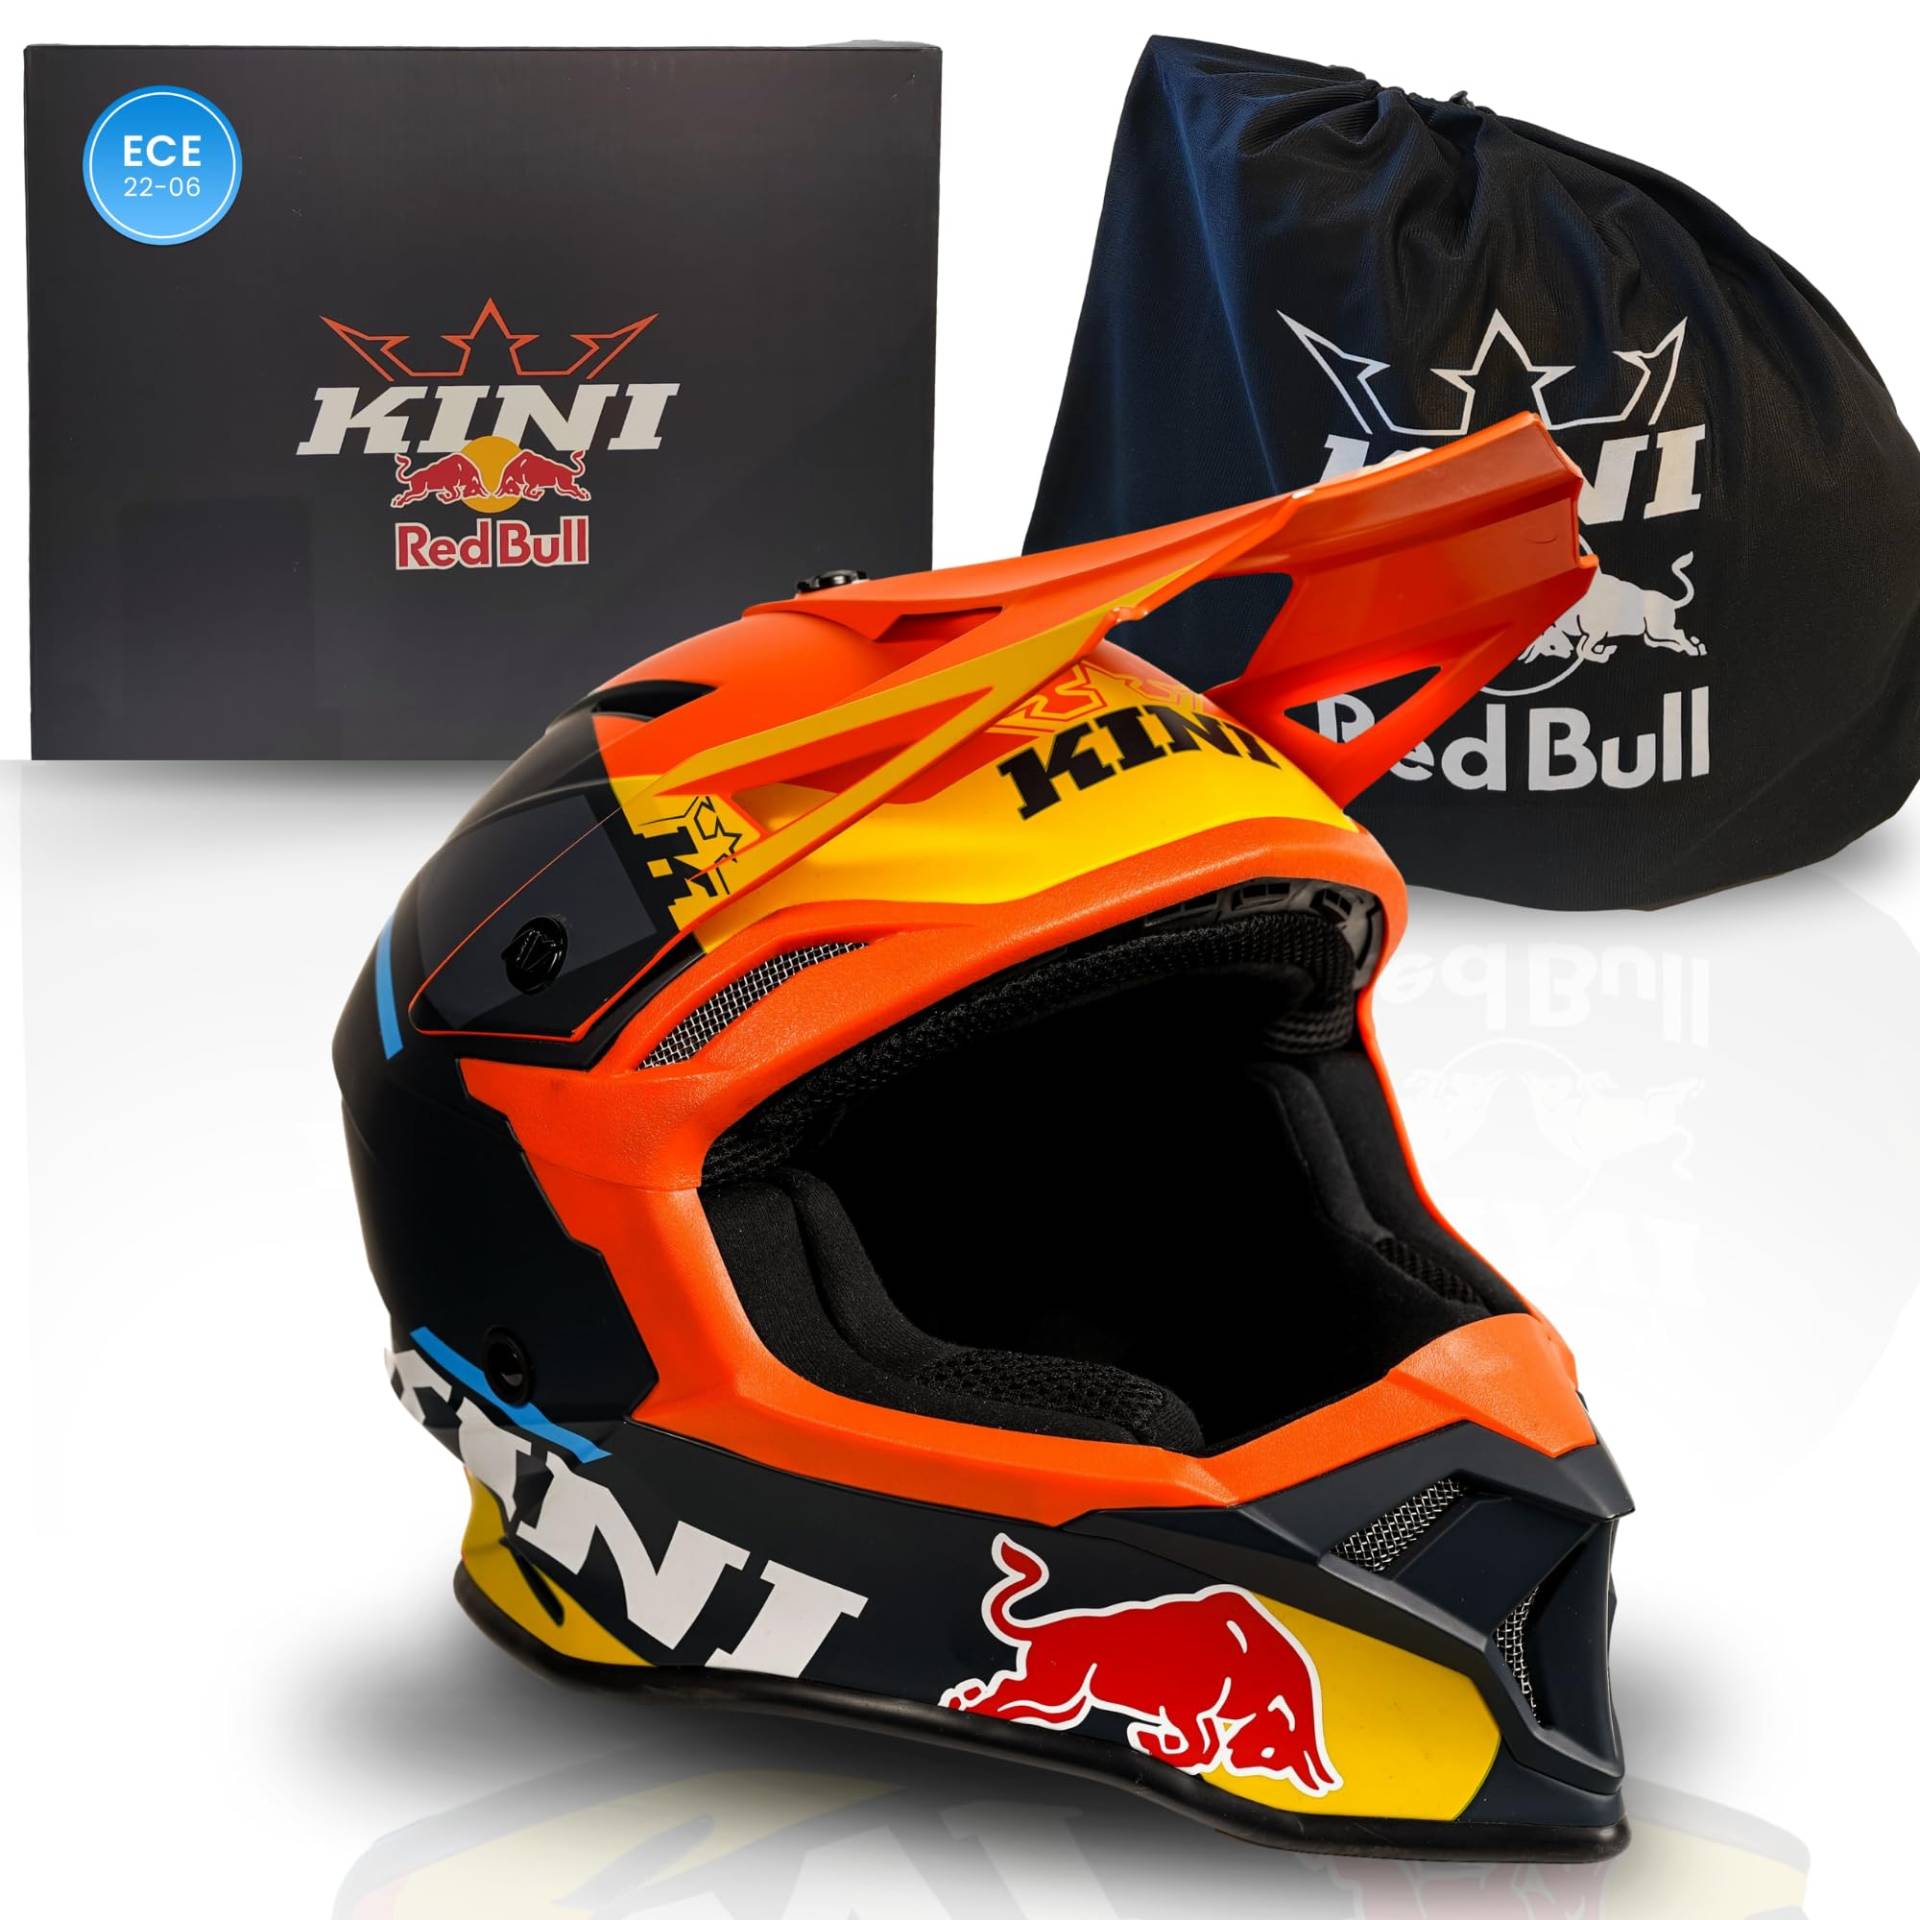 Kini Red Bull Motocross Helm Herren [Premium] Geprüfter Motorradhelm für Renneinsatz - Crosshelm auch als Enduro Helm Downhill Helm einsetzbar - Motocross Helm Brillenträger geeignet (M, Flash Helm) von Kini